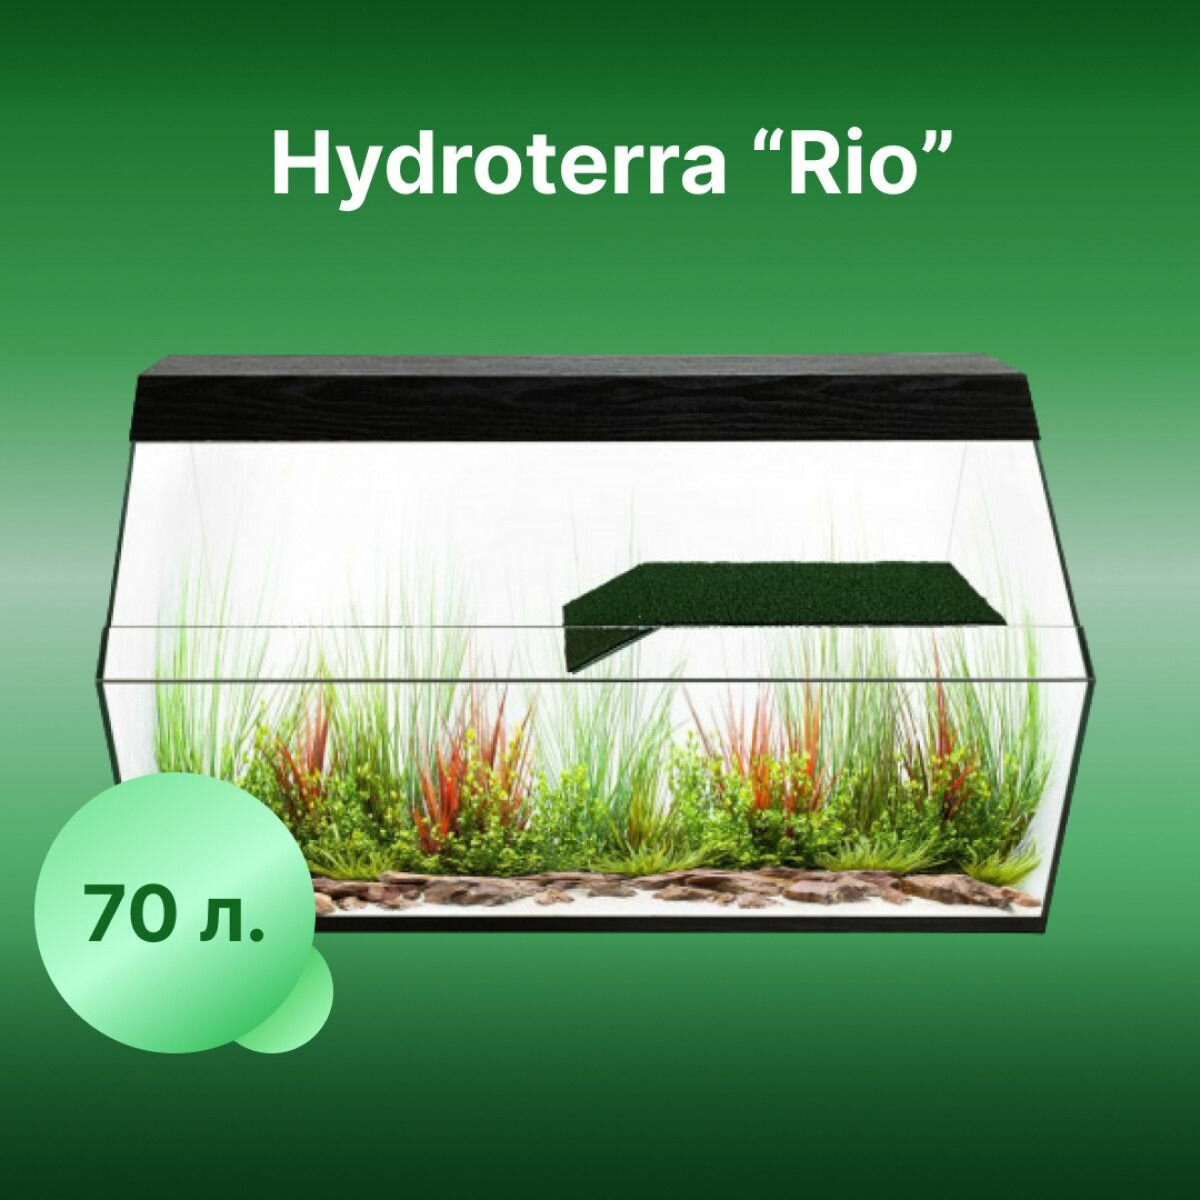 Акватеррариум Rio 70 литров черный для геккон, анолис, гуппи, ракообразных и жаб 500x290x360 мм - фотография № 1